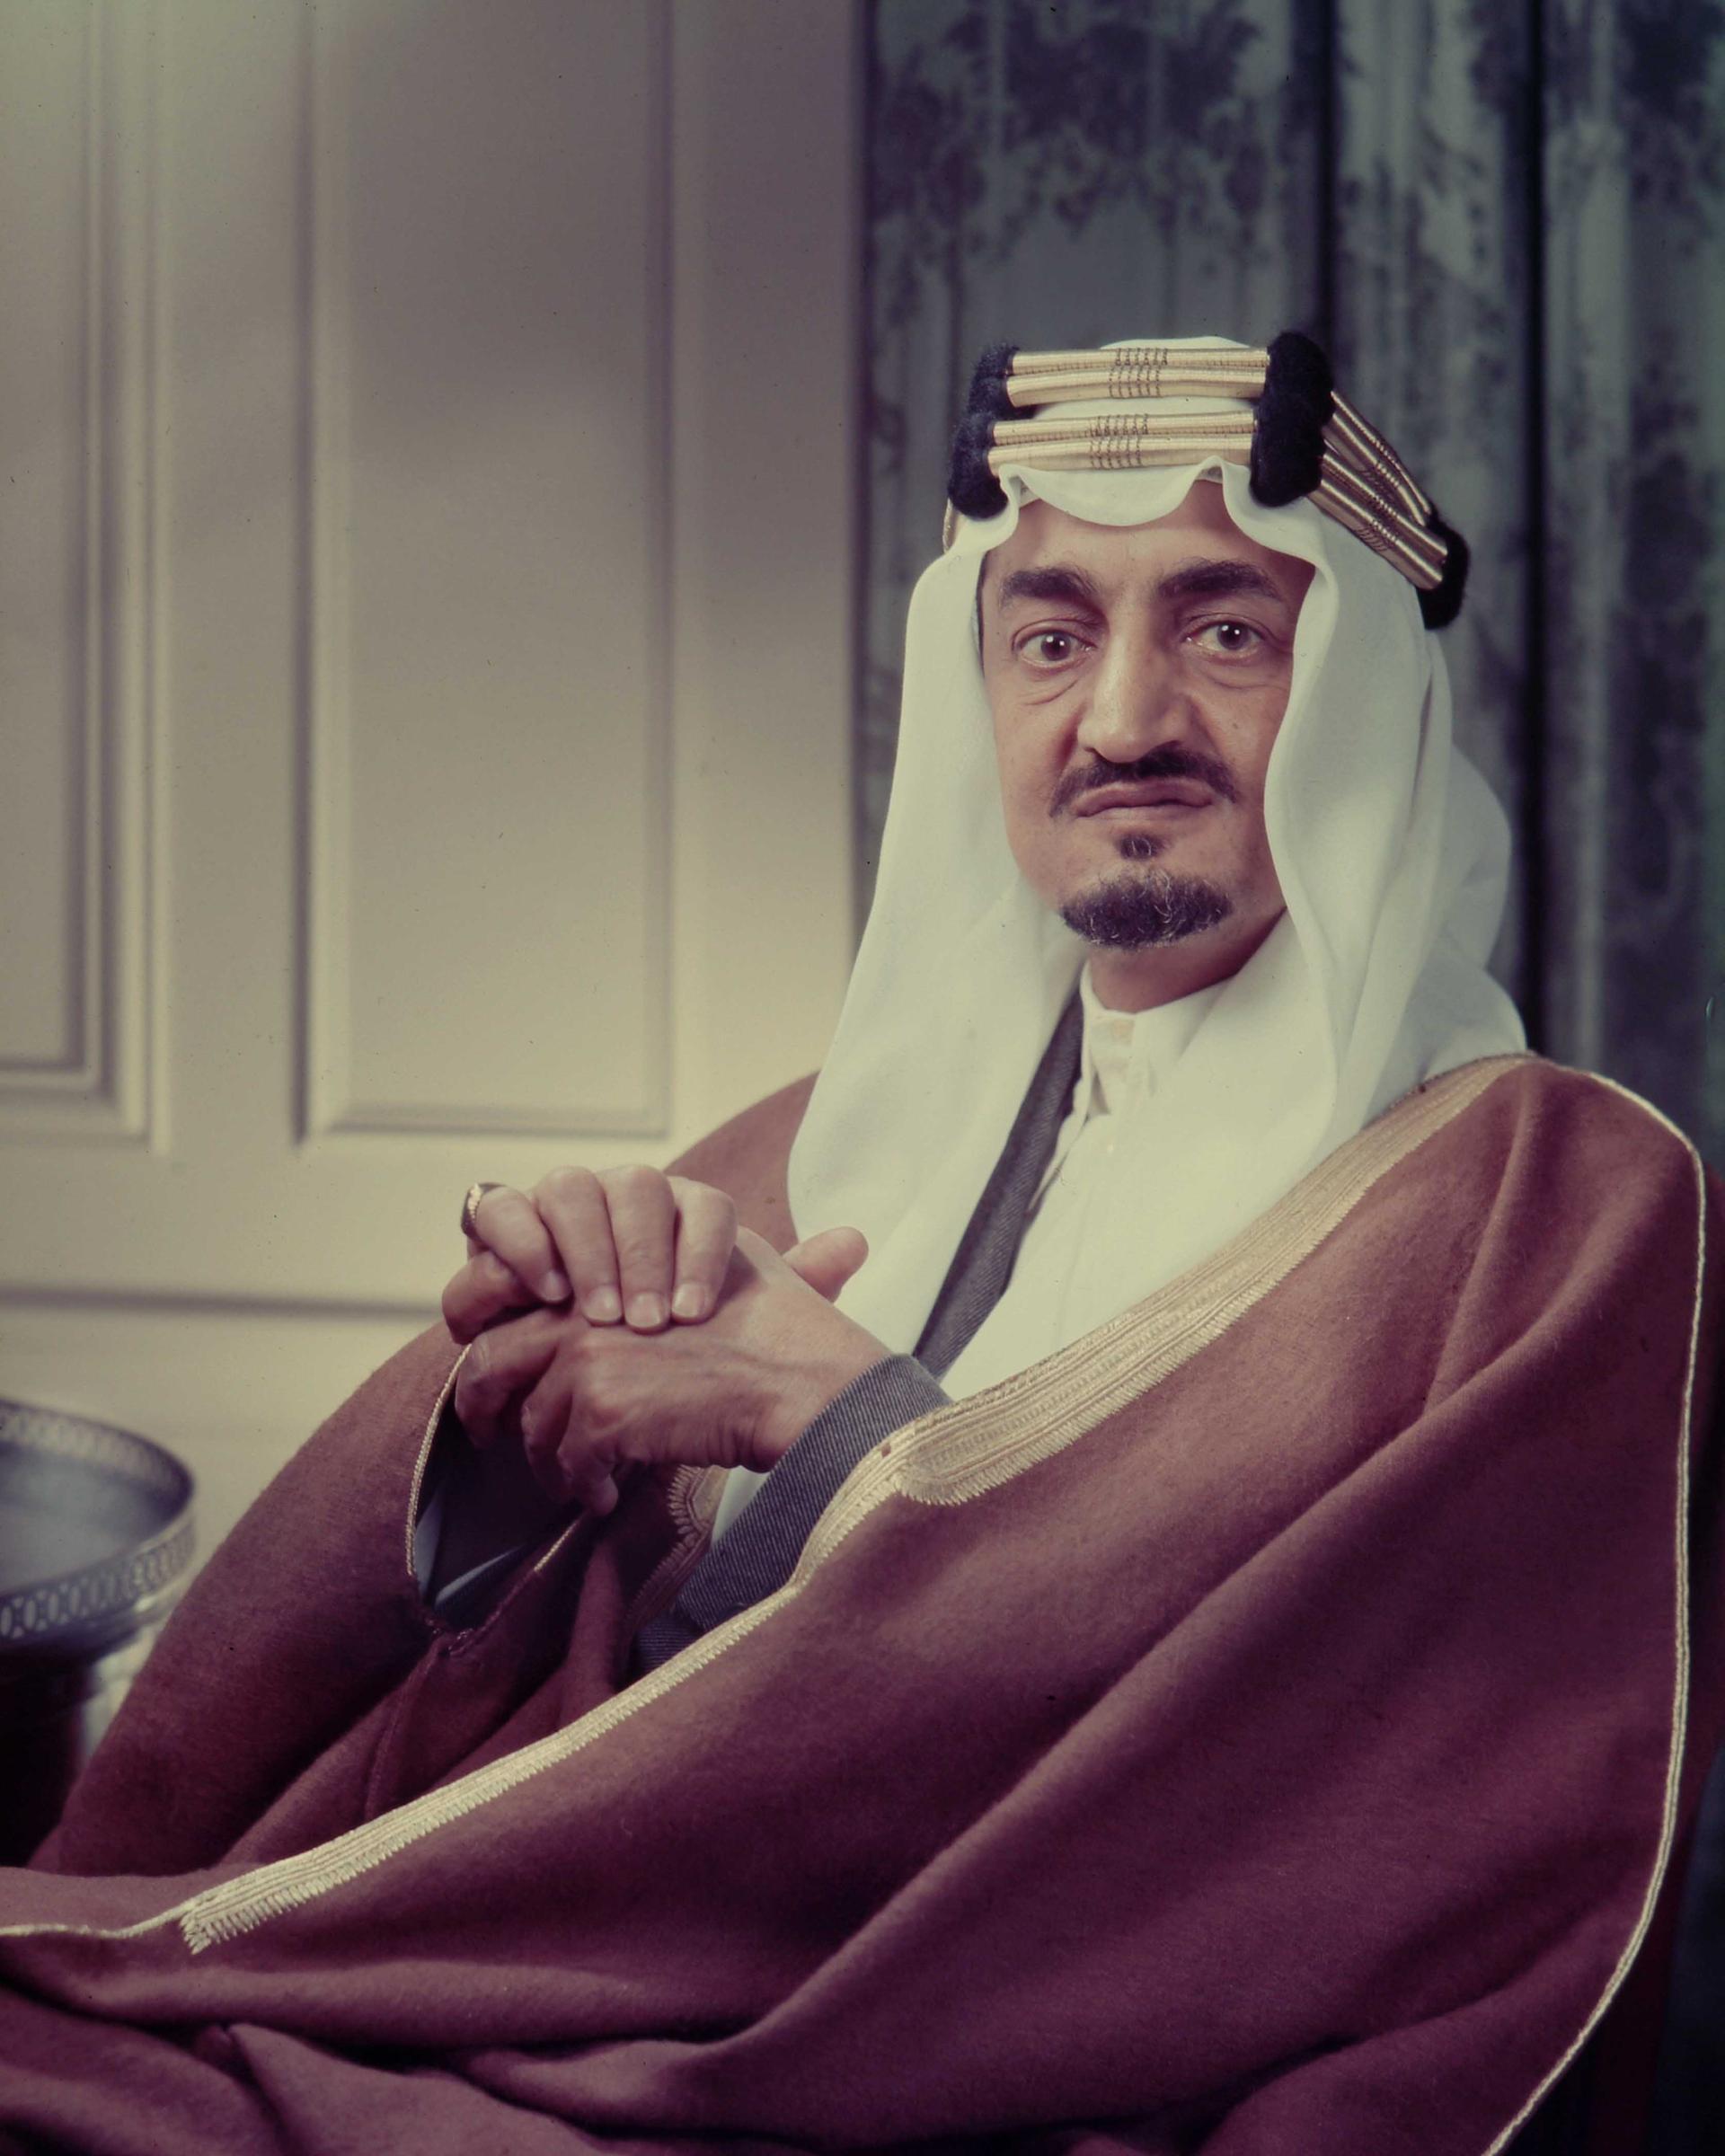 الملك فيصل بن عبد العزيز آل سعود